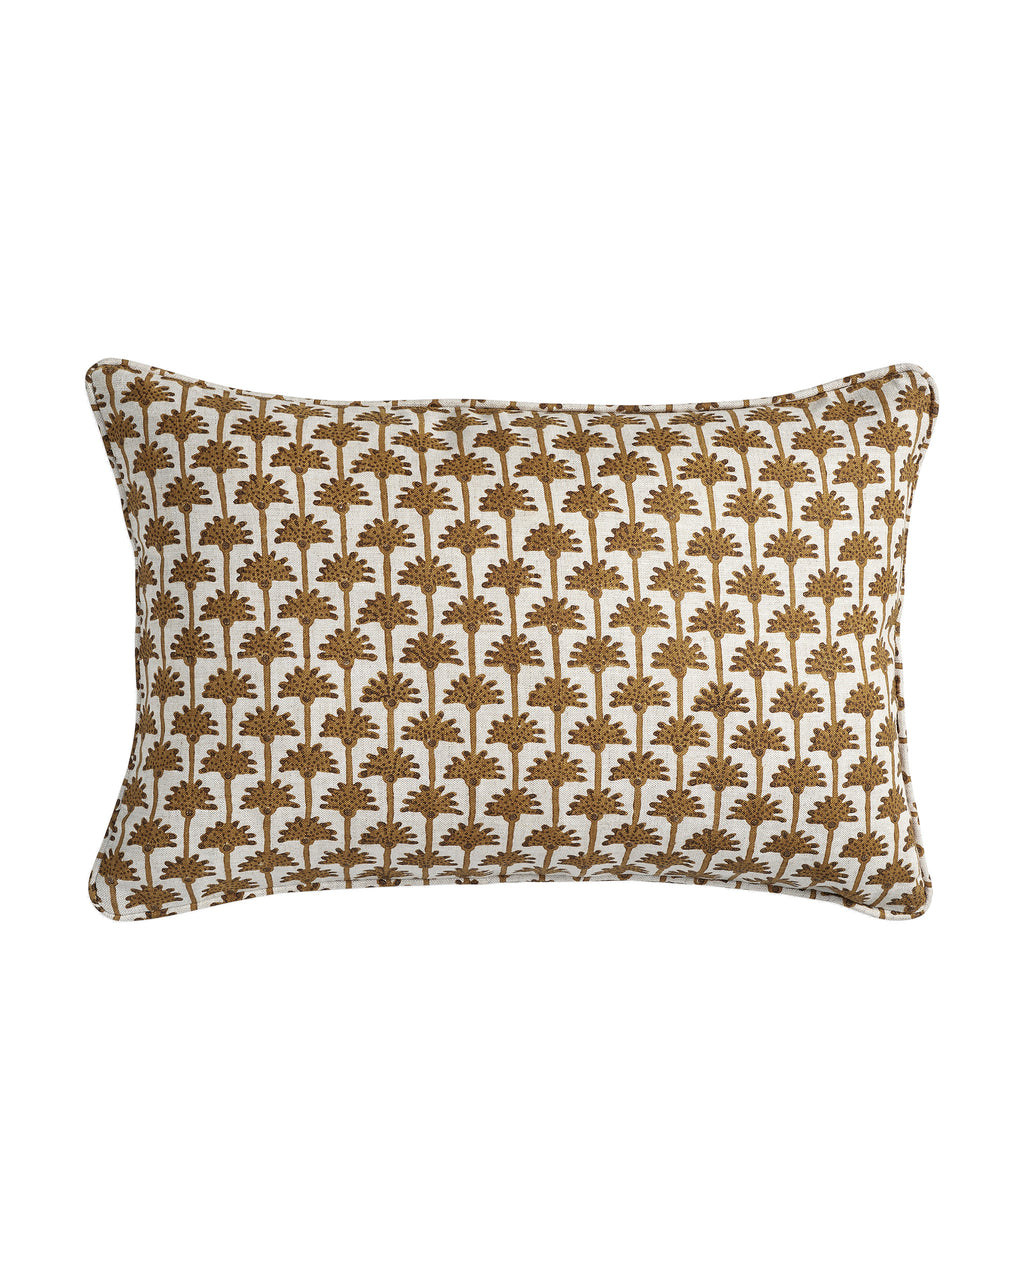 Ponza Saffron linen cushion 30x45cm